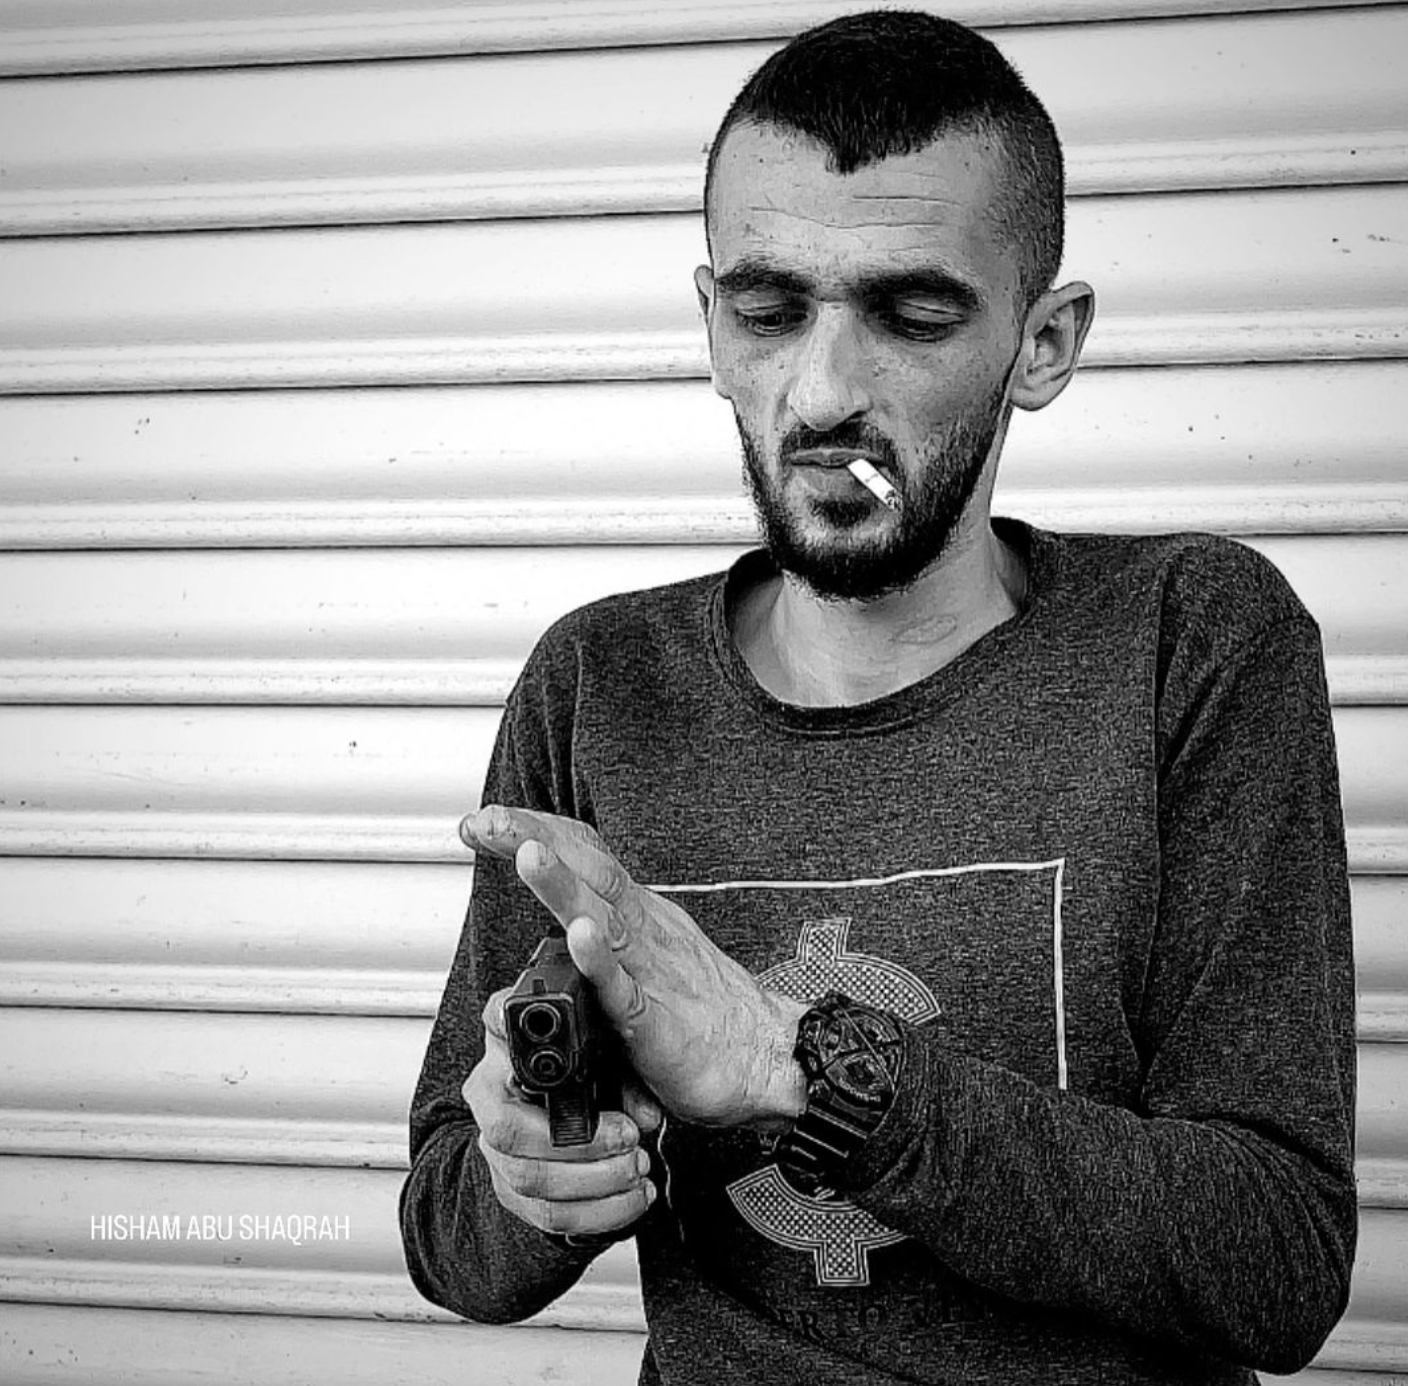 "أبو شجاع" قائد كتيبة نور شمس، ظهر أثناء تشييع الشهداء بعد شائعات عن استشهاده (صورة: هشام أبو شقرة)